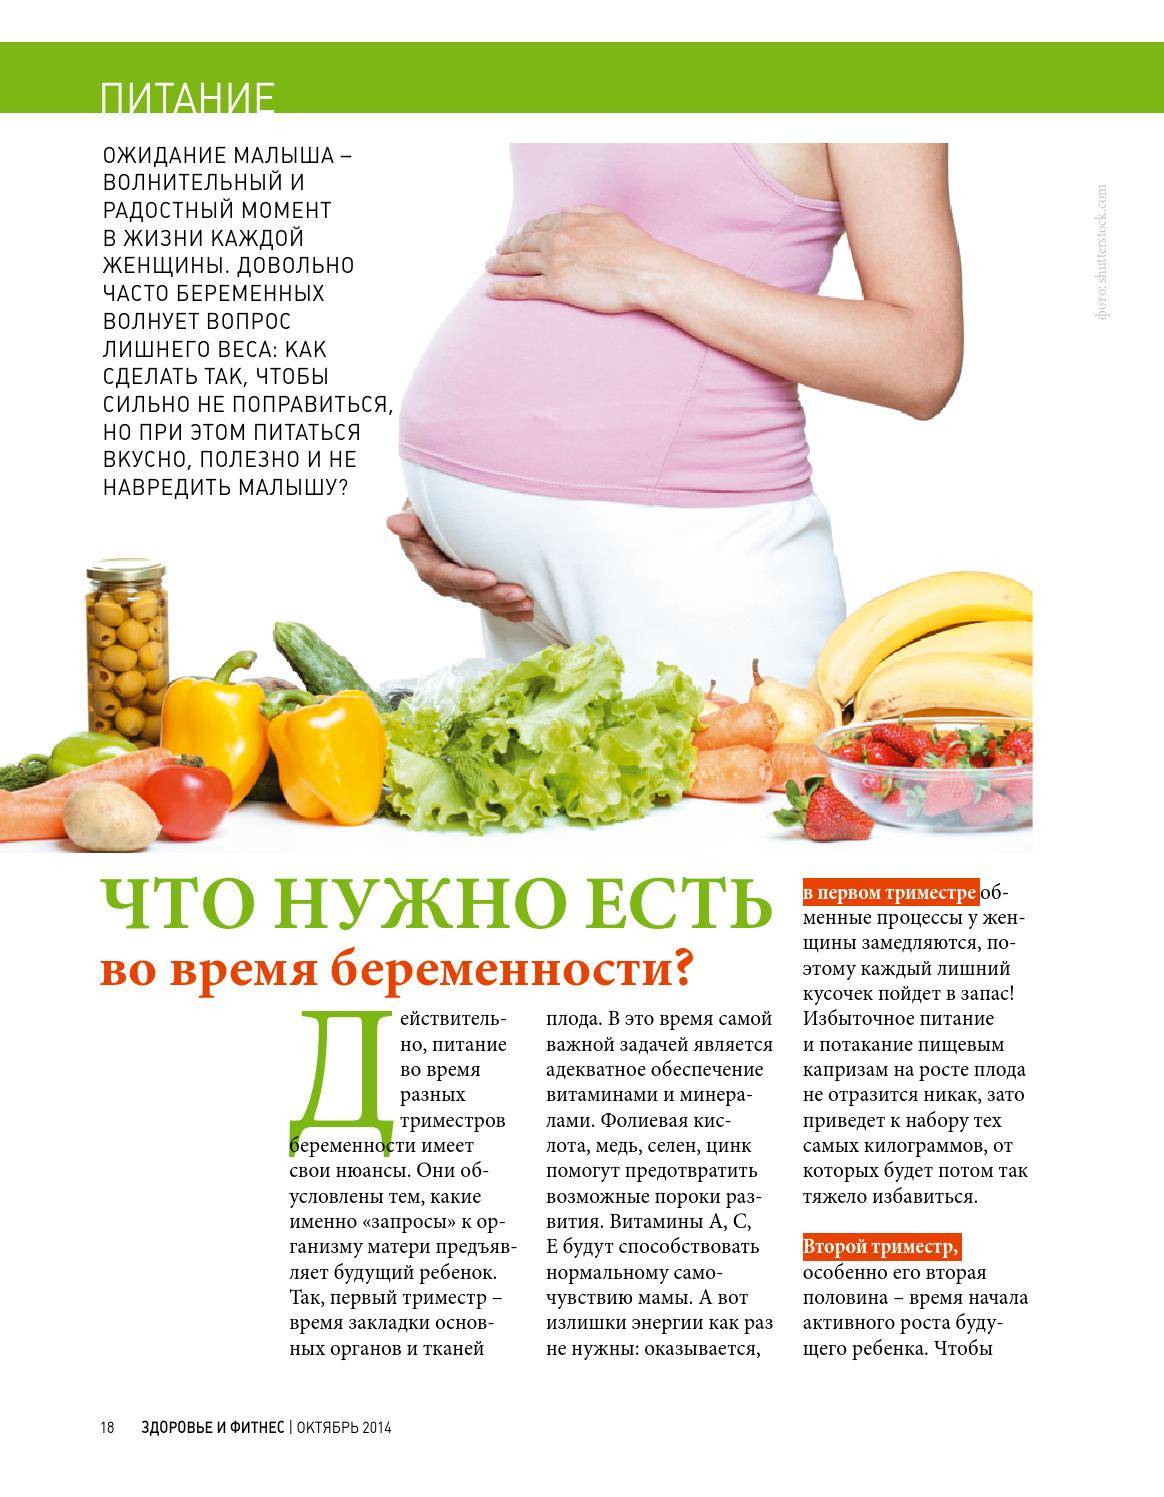 Сильный запор при беременности. Питание для беременных. Рацион питания для беременных. План питания беременной. Правильное питание беременной.